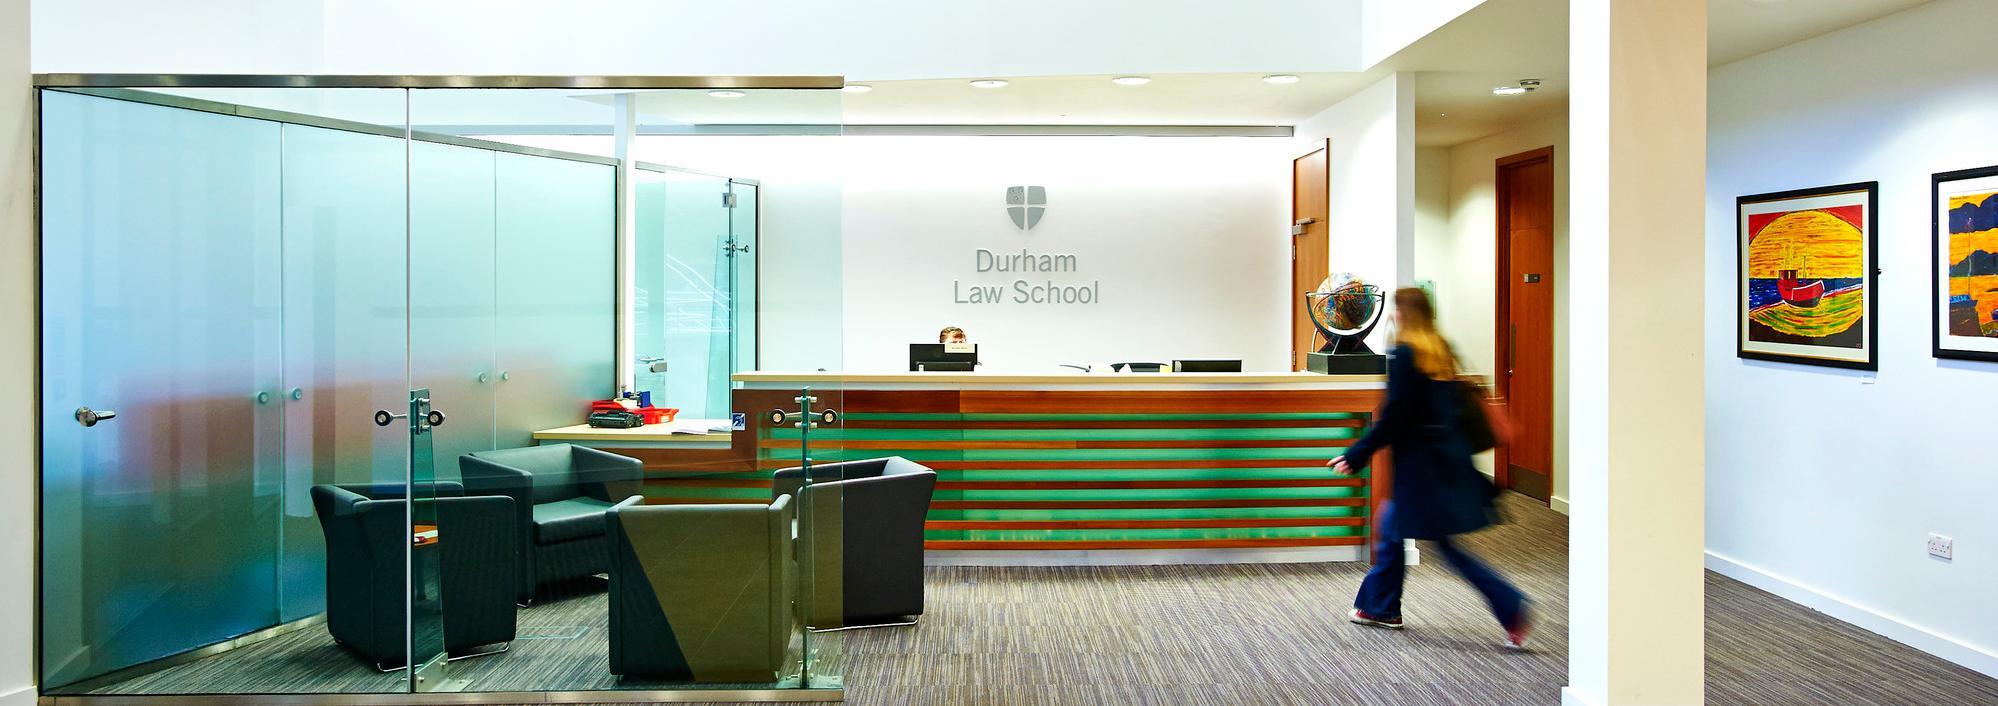 Durham Law School Entrance Cropped